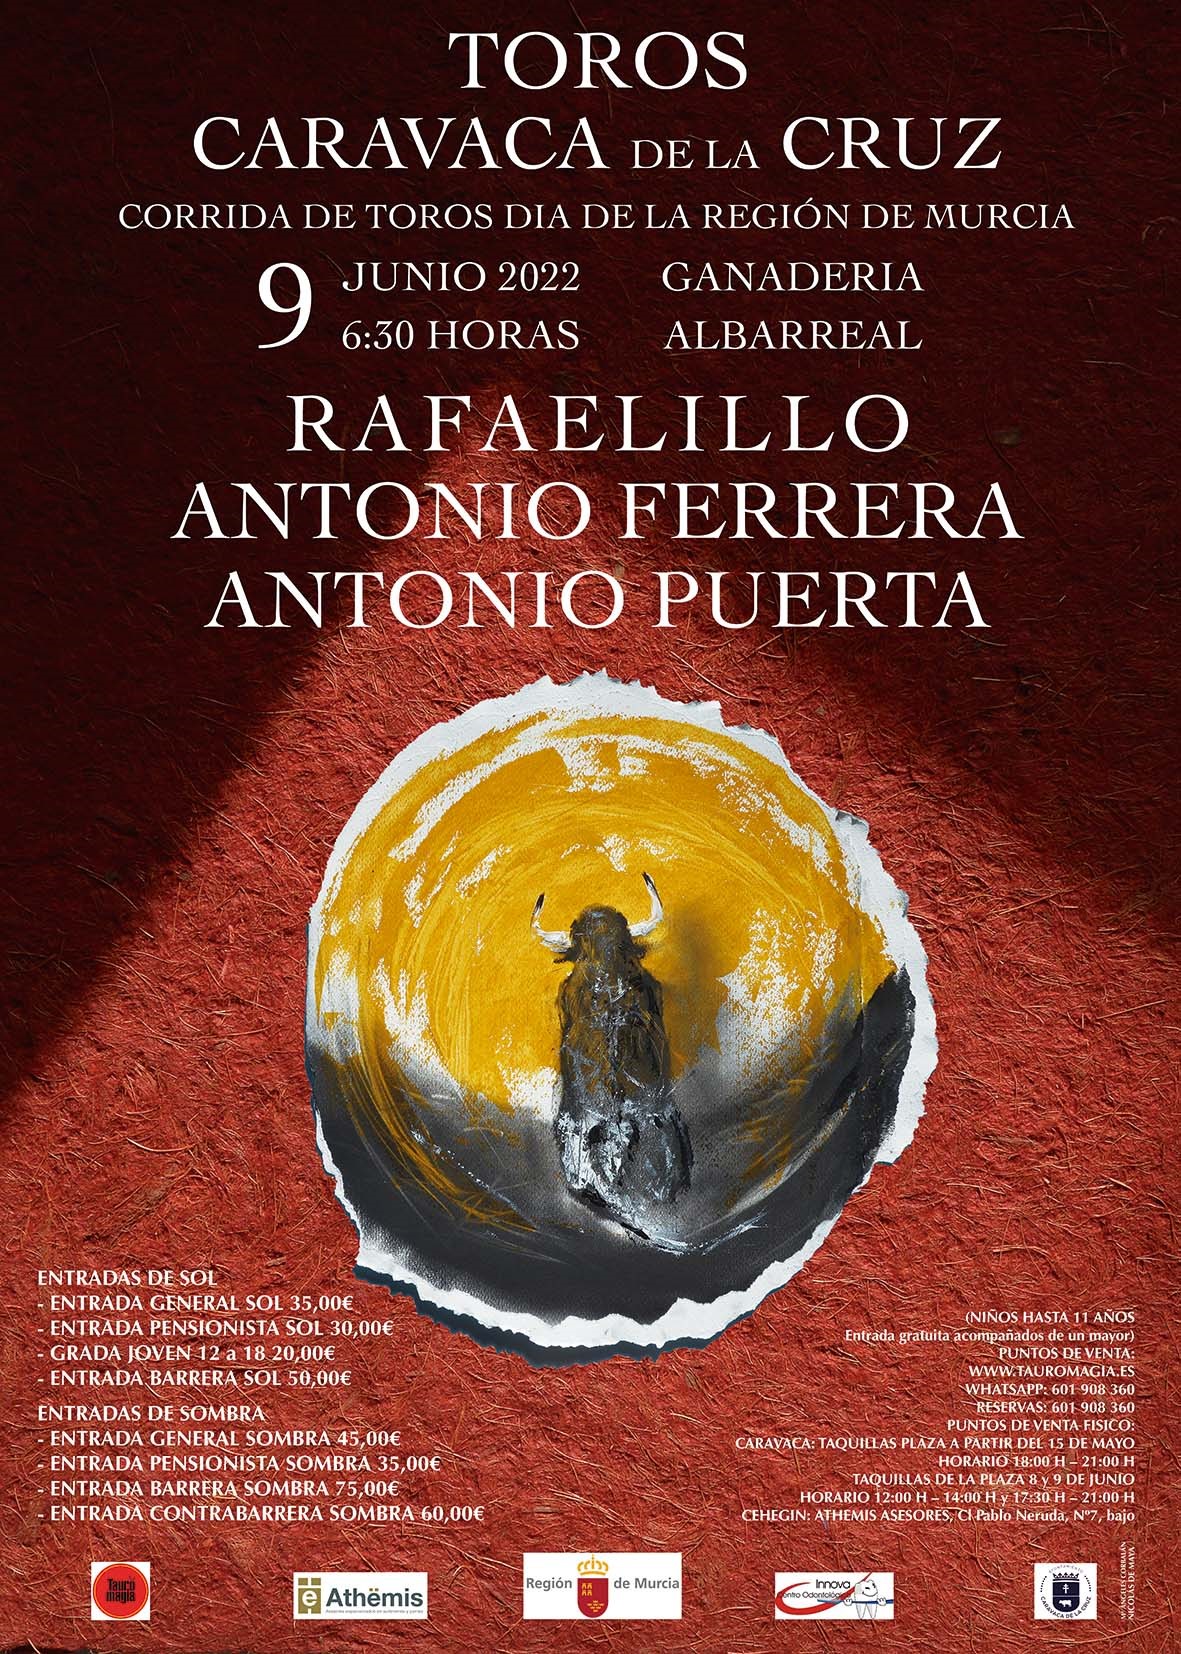 Toros Caravaca de la Cruz 9 juin 2022.